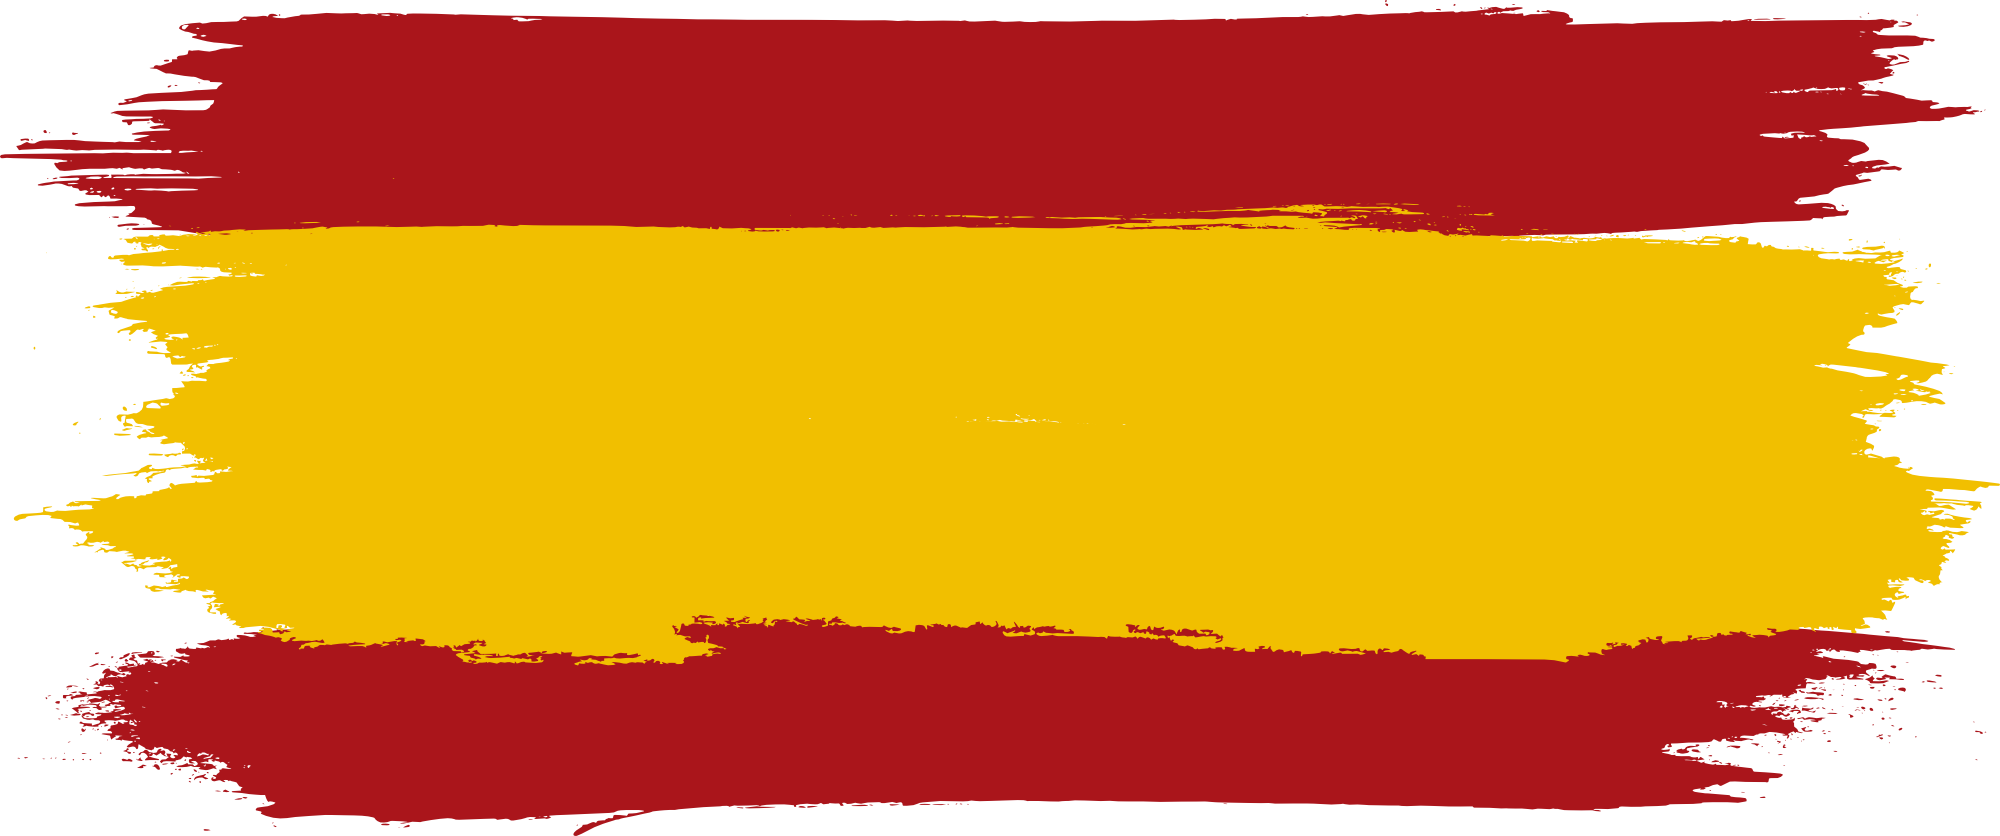 Испания PNG